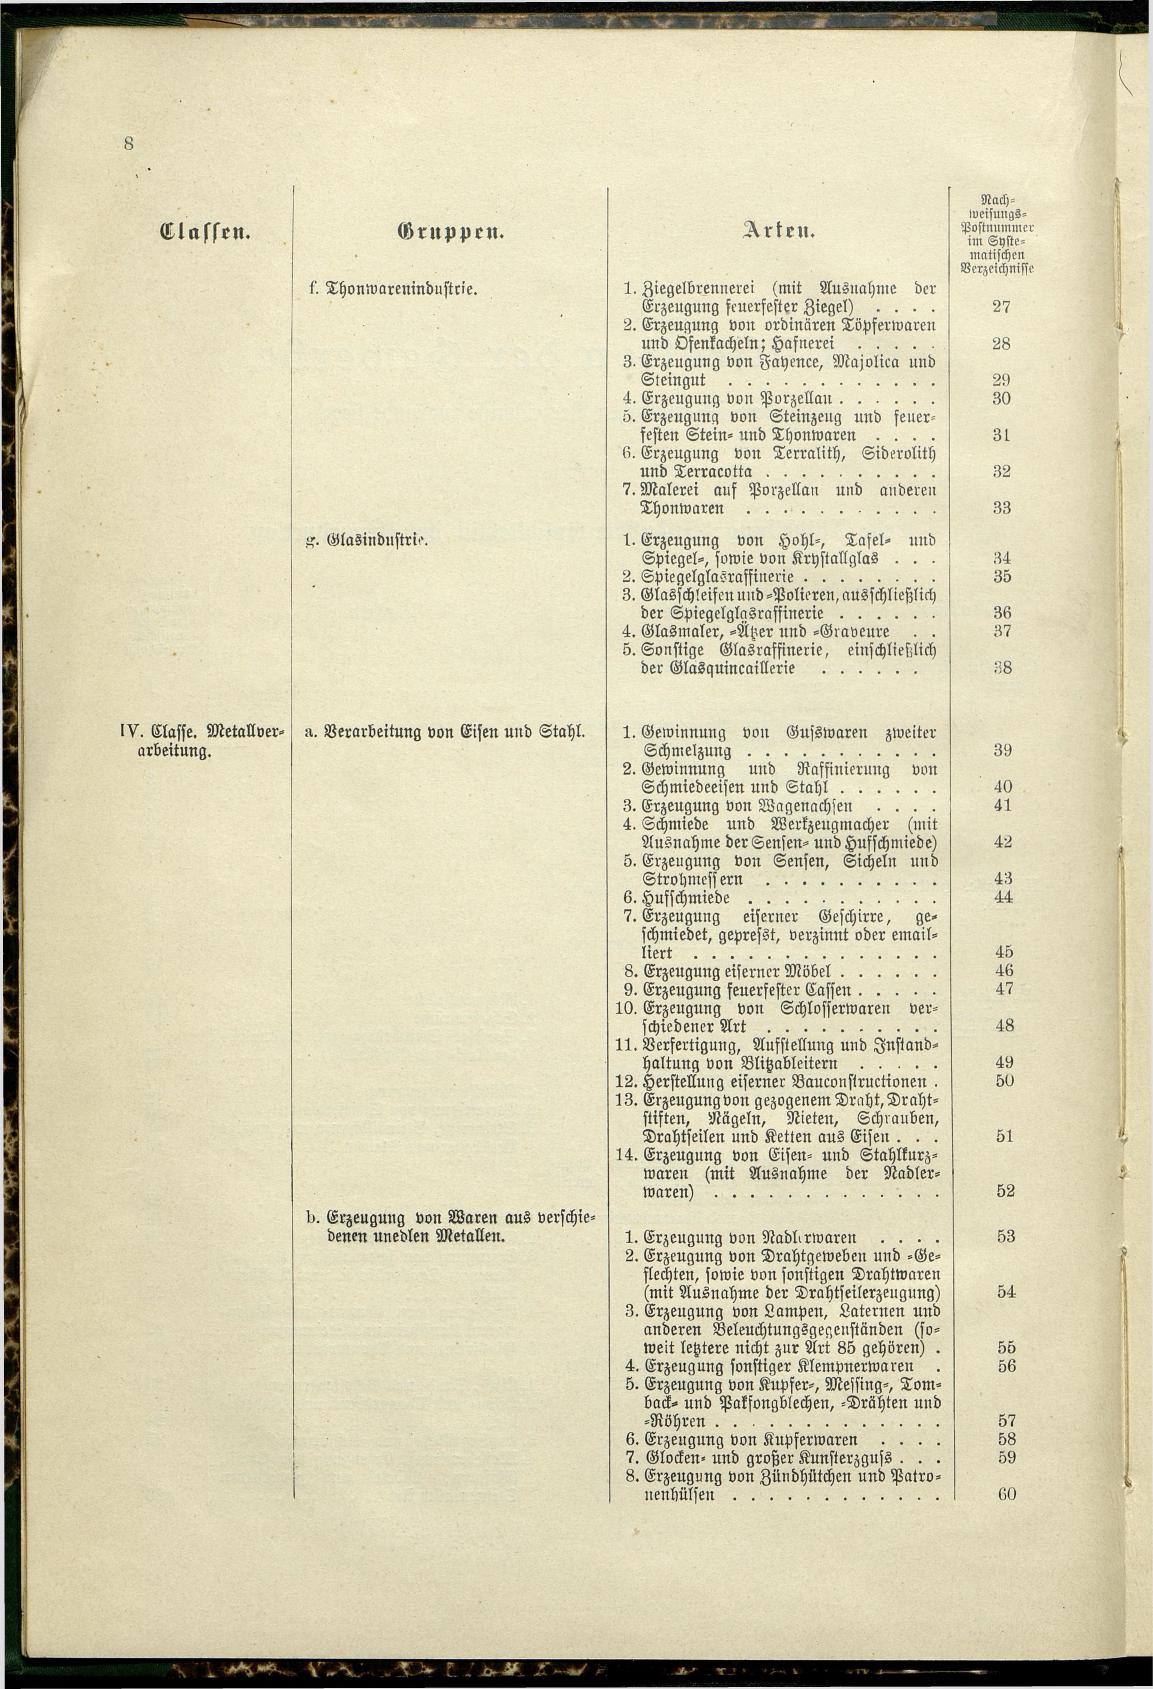 Verzeichnis der Gewerbe der im Reichsrathe vertretenen Königreiche und Länder 1900 - Seite 12